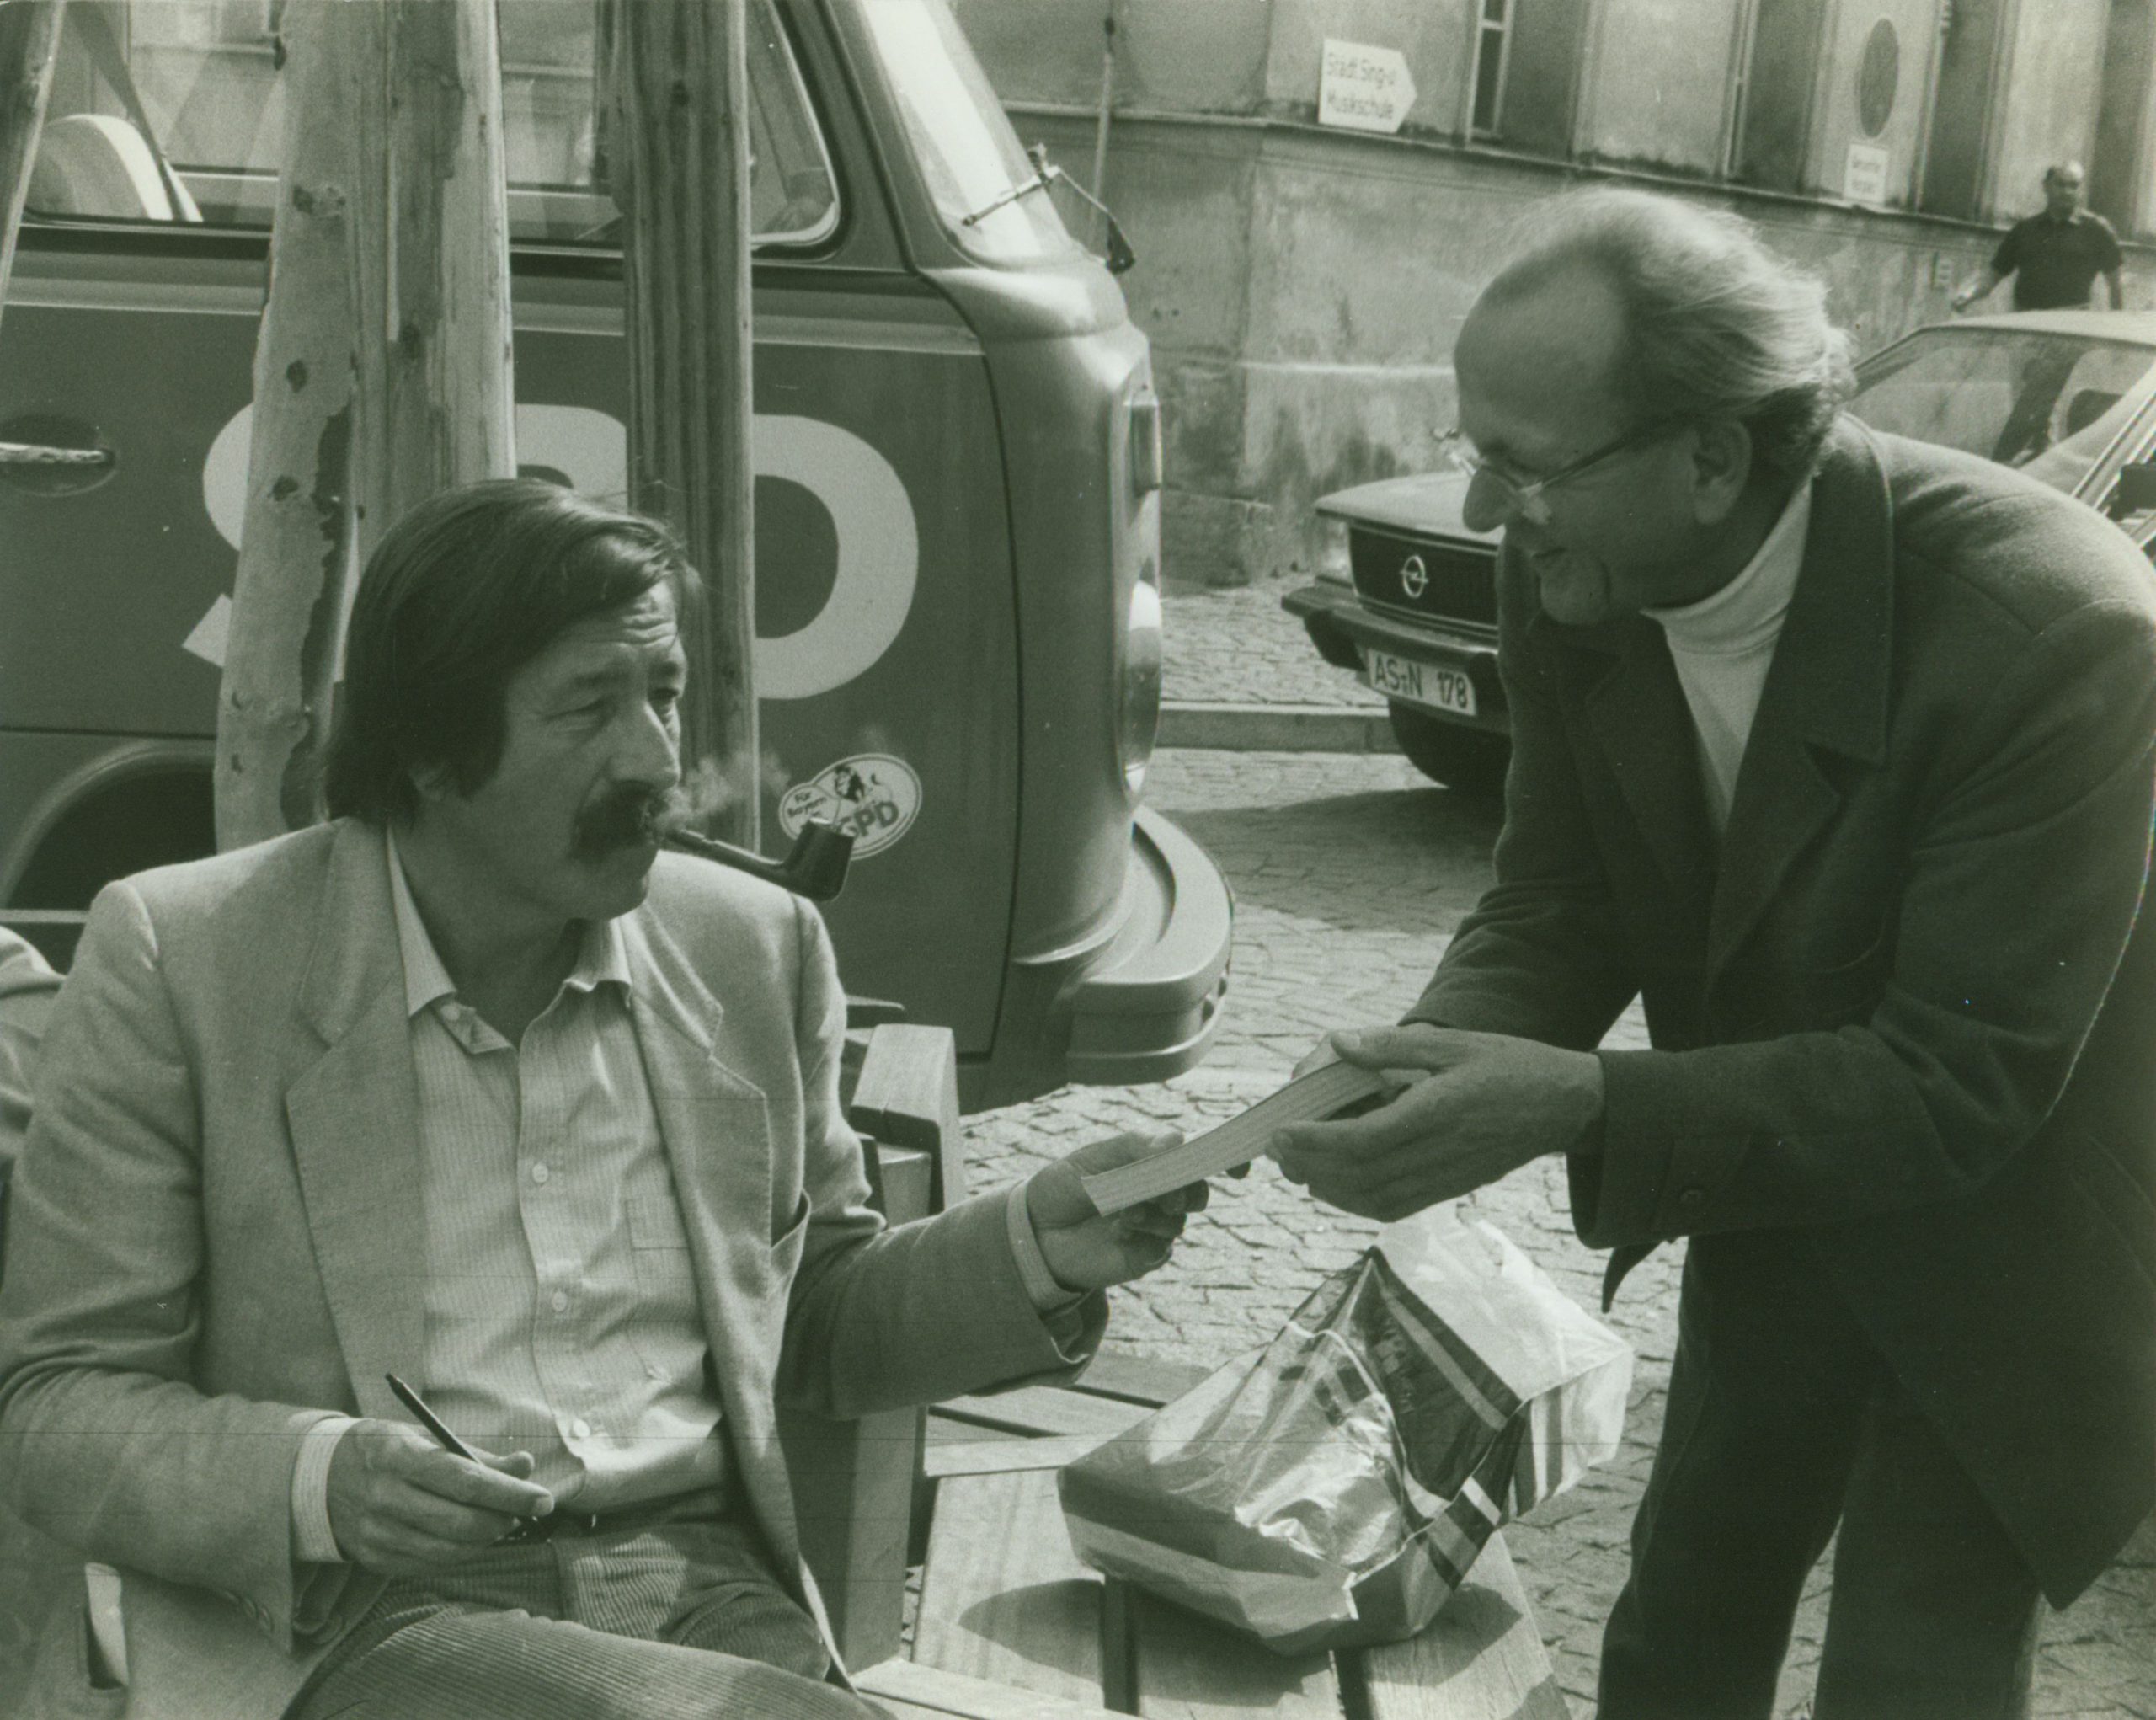 Die <strong>Günter Grass Stiftung Bremen</strong> sammelt, dokumentiert und erschließt das audiovisuelle Werk von Günter Grass.